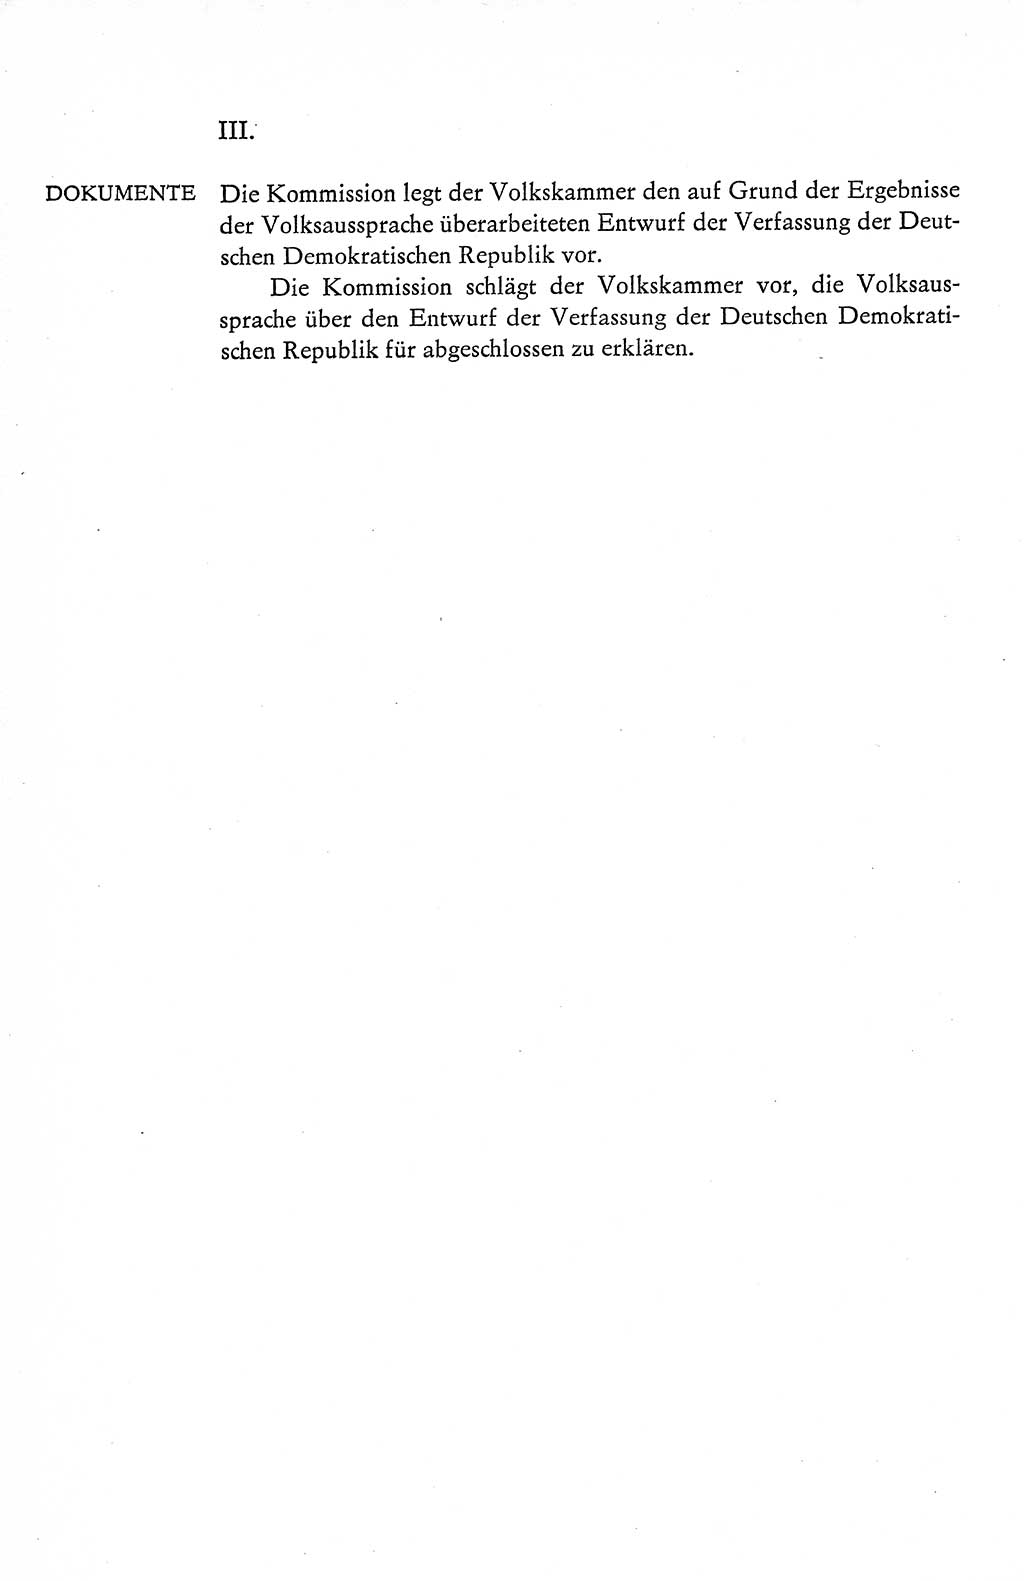 Verfassung der Deutschen Demokratischen Republik (DDR), Dokumente, Kommentar 1969, Band 1, Seite 178 (Verf. DDR Dok. Komm. 1969, Bd. 1, S. 178)